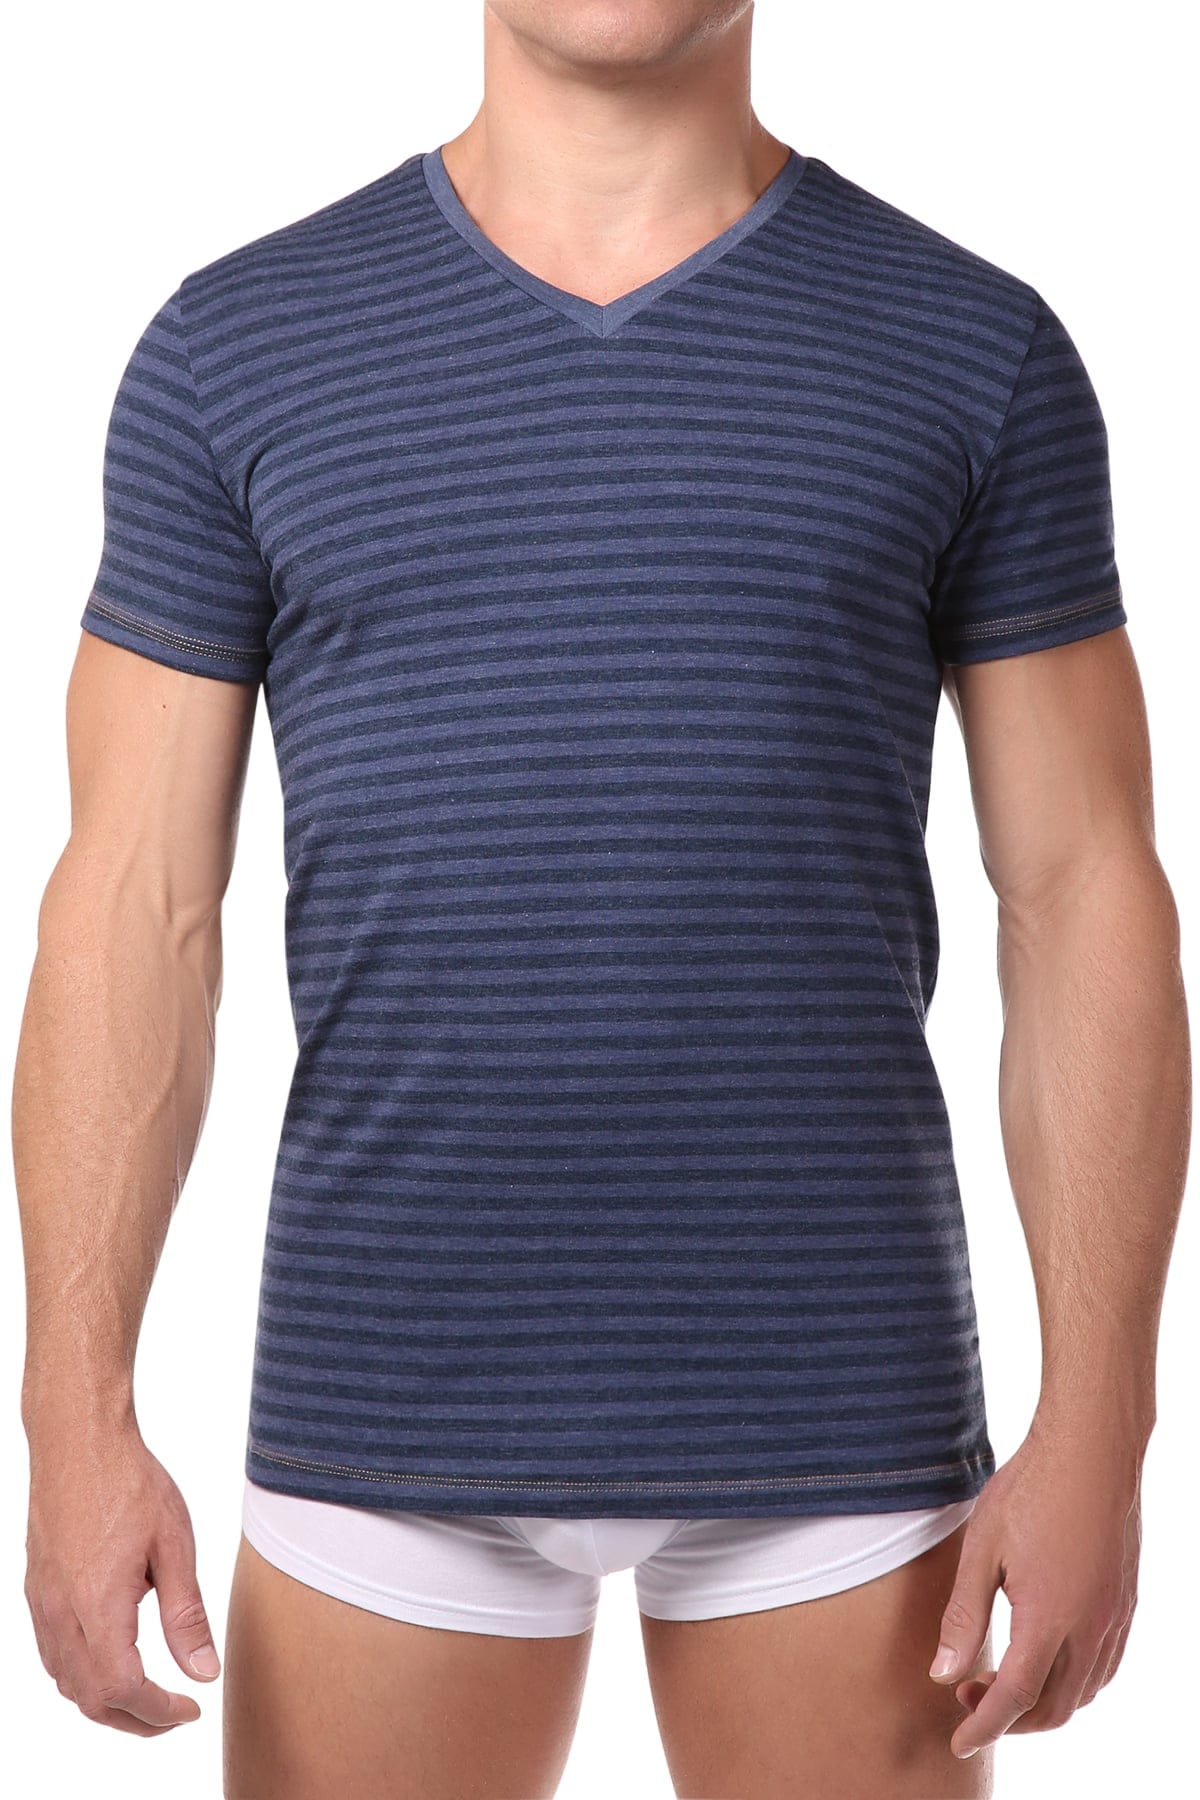 Diesel Blue Stripe Michael V-Neck T-Shirt